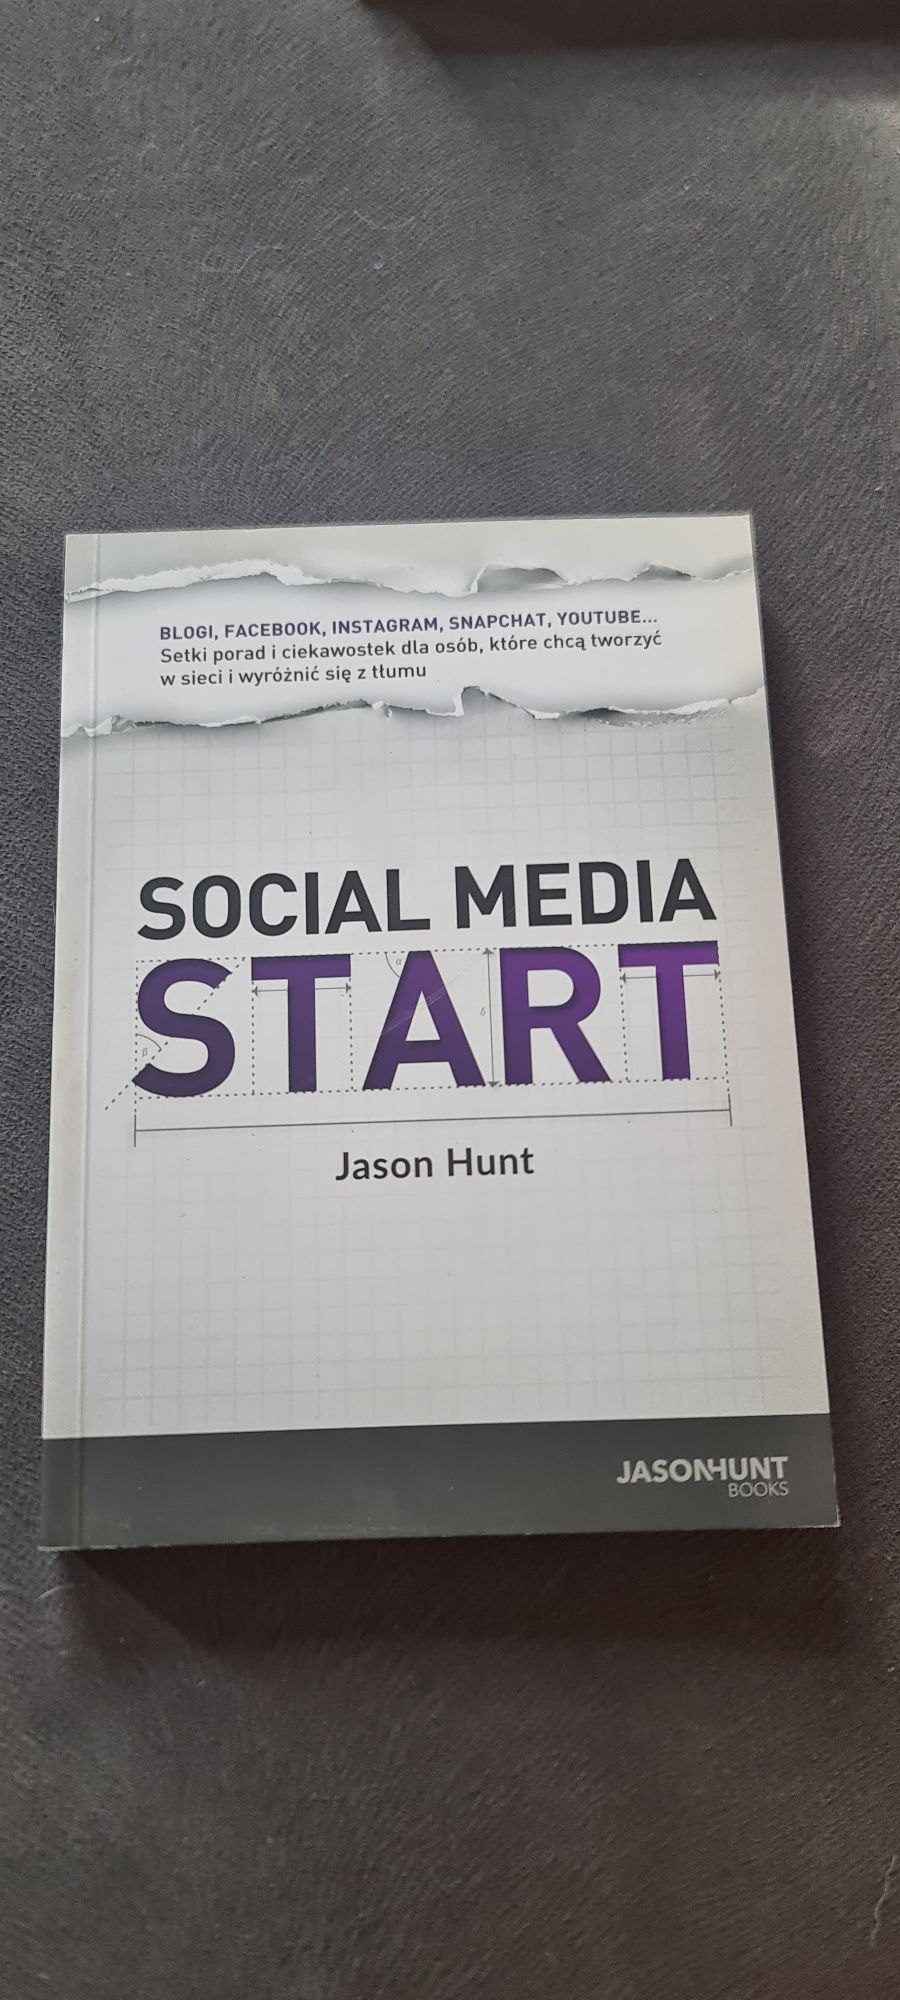 SOCIAL MEDIA Start, Jason Hunt